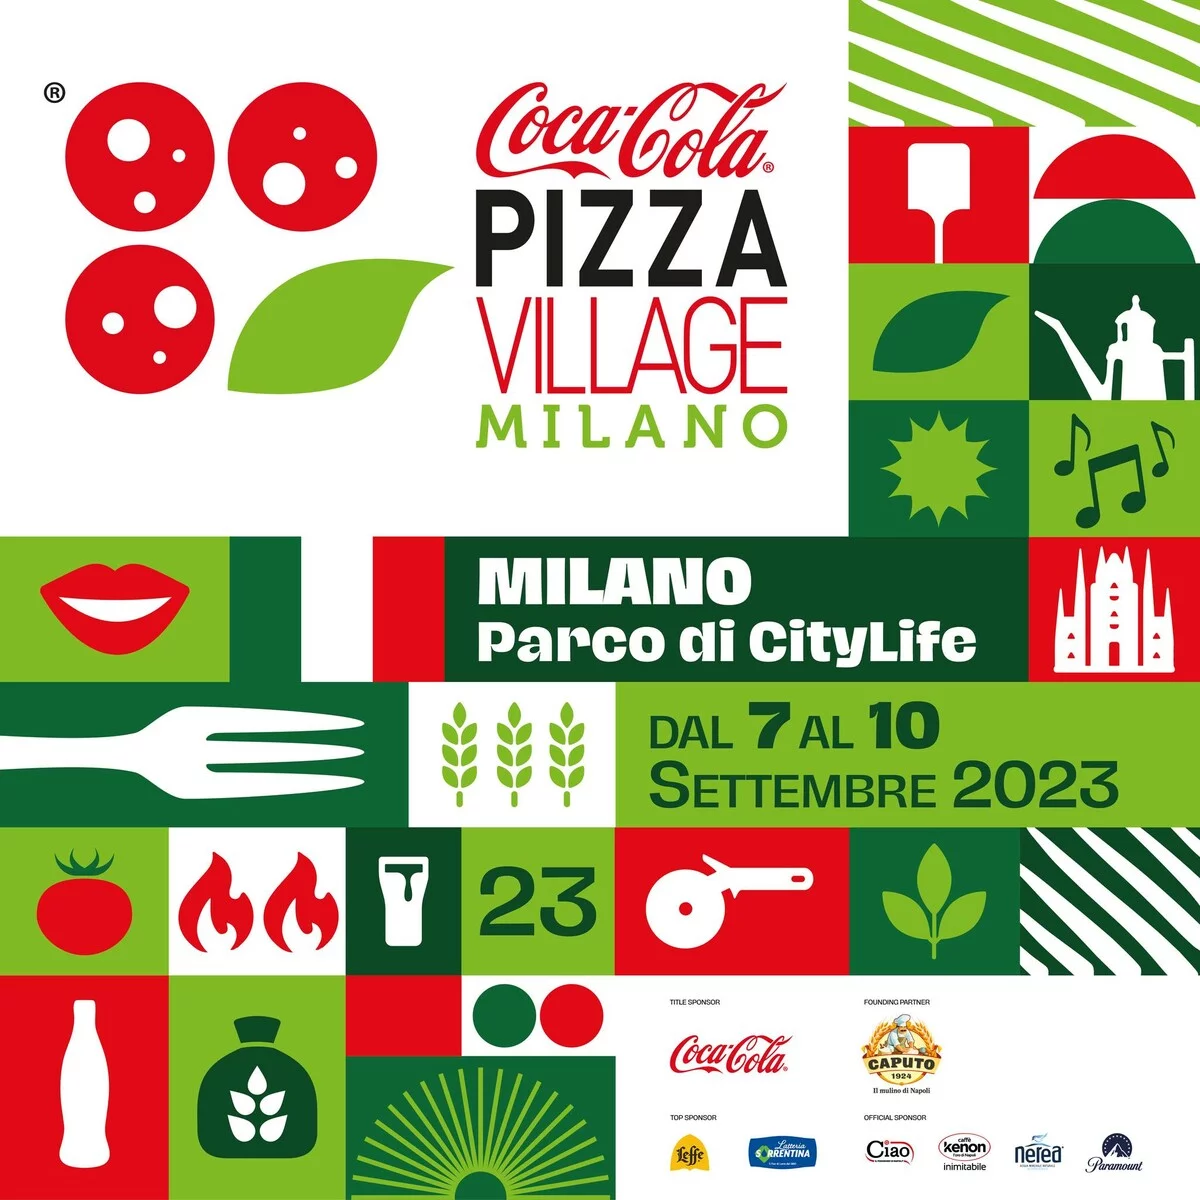 Coca-Cola Pizza Village Milano